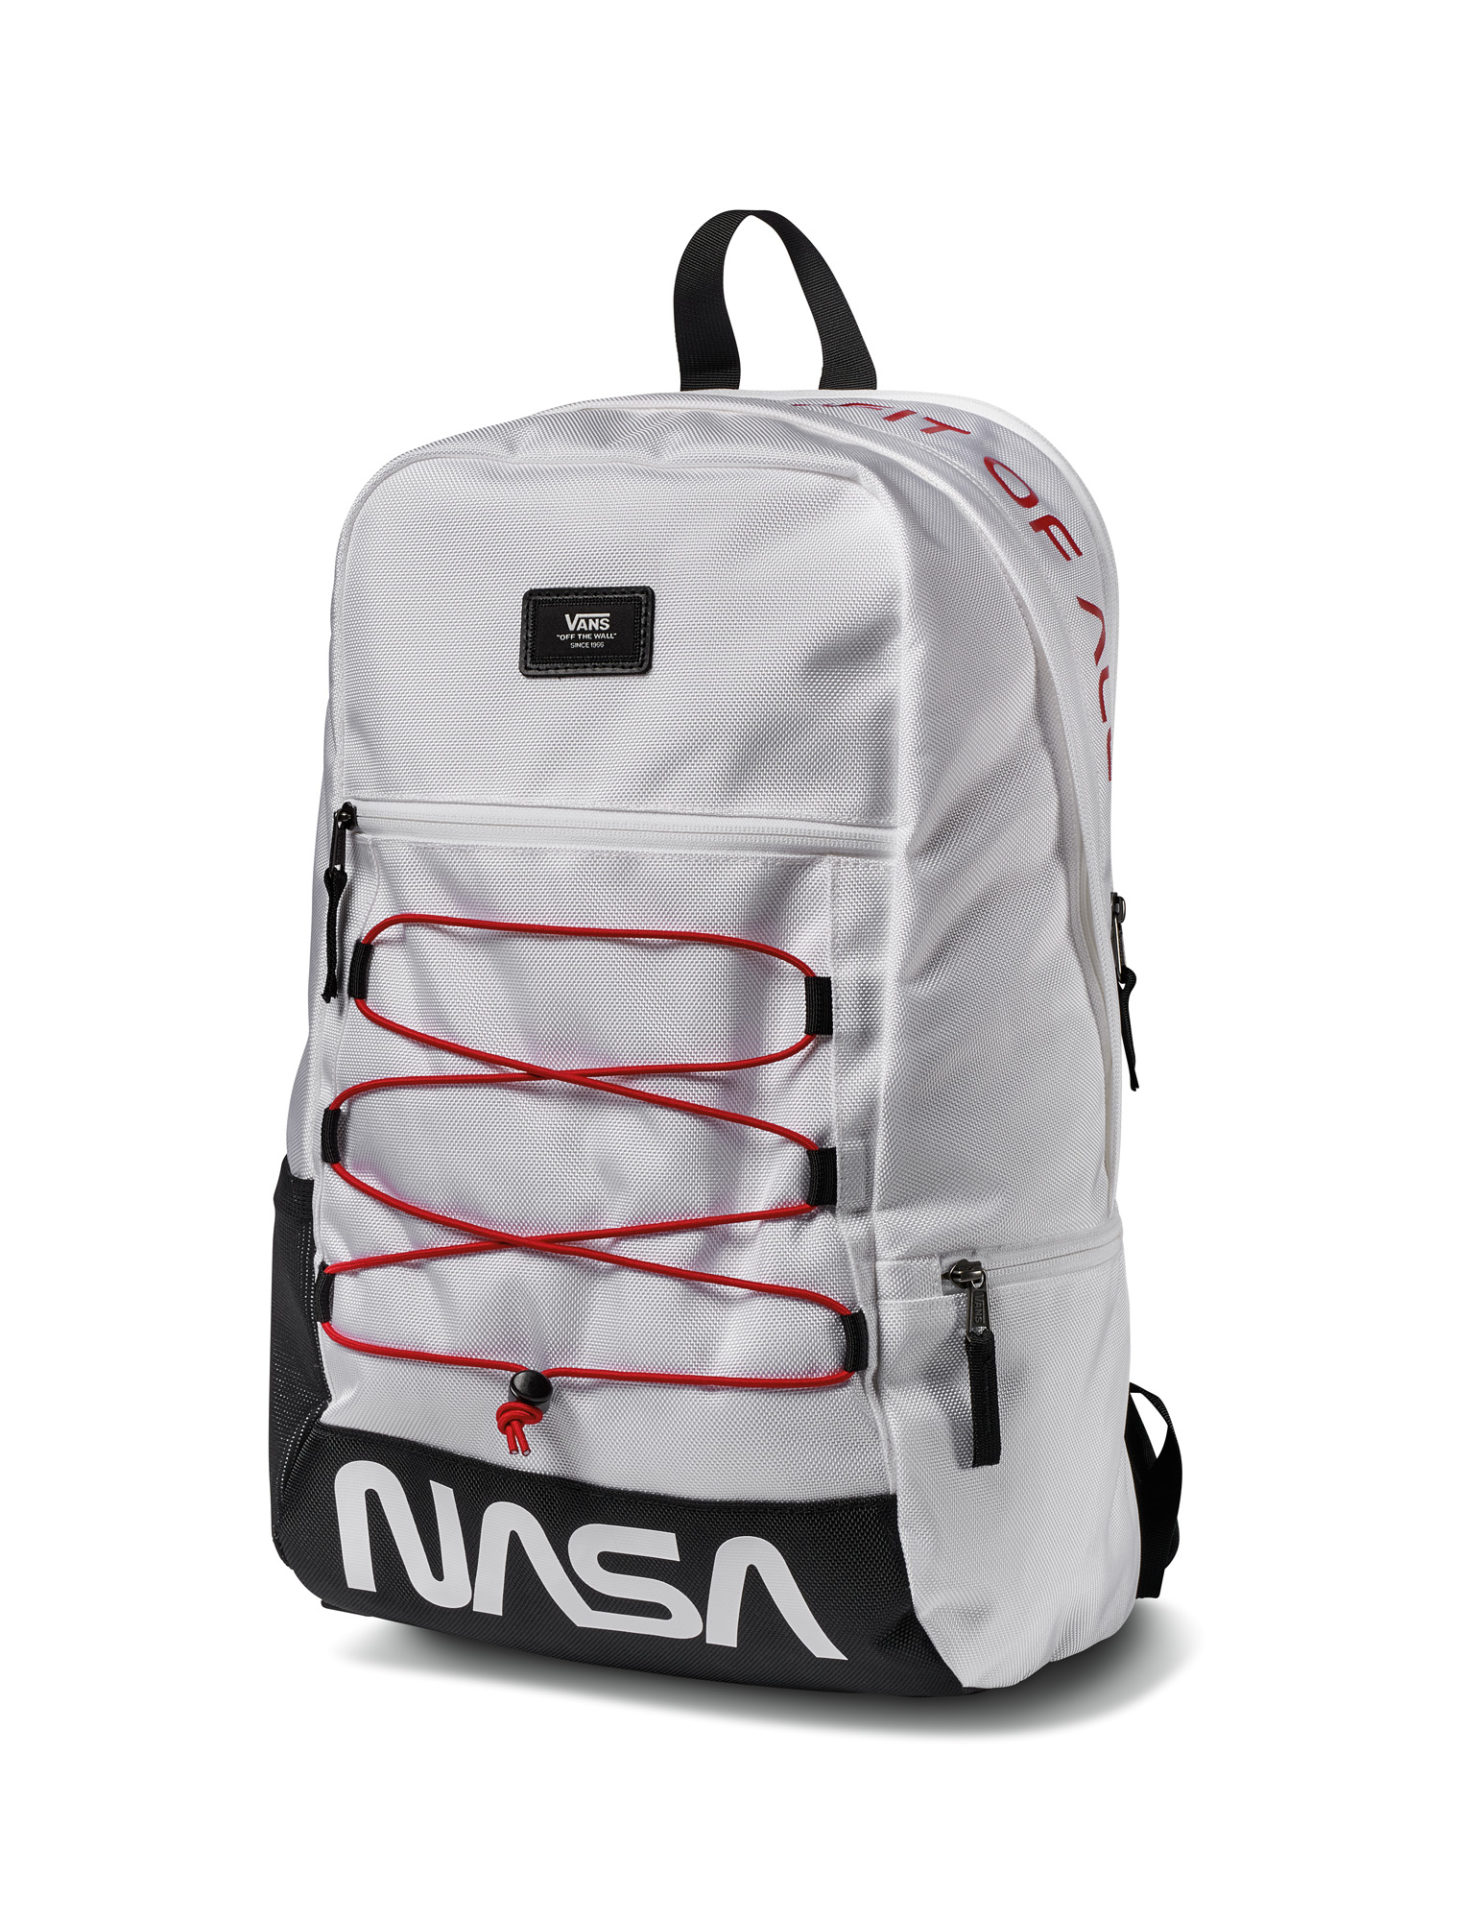 nasa vans backpack